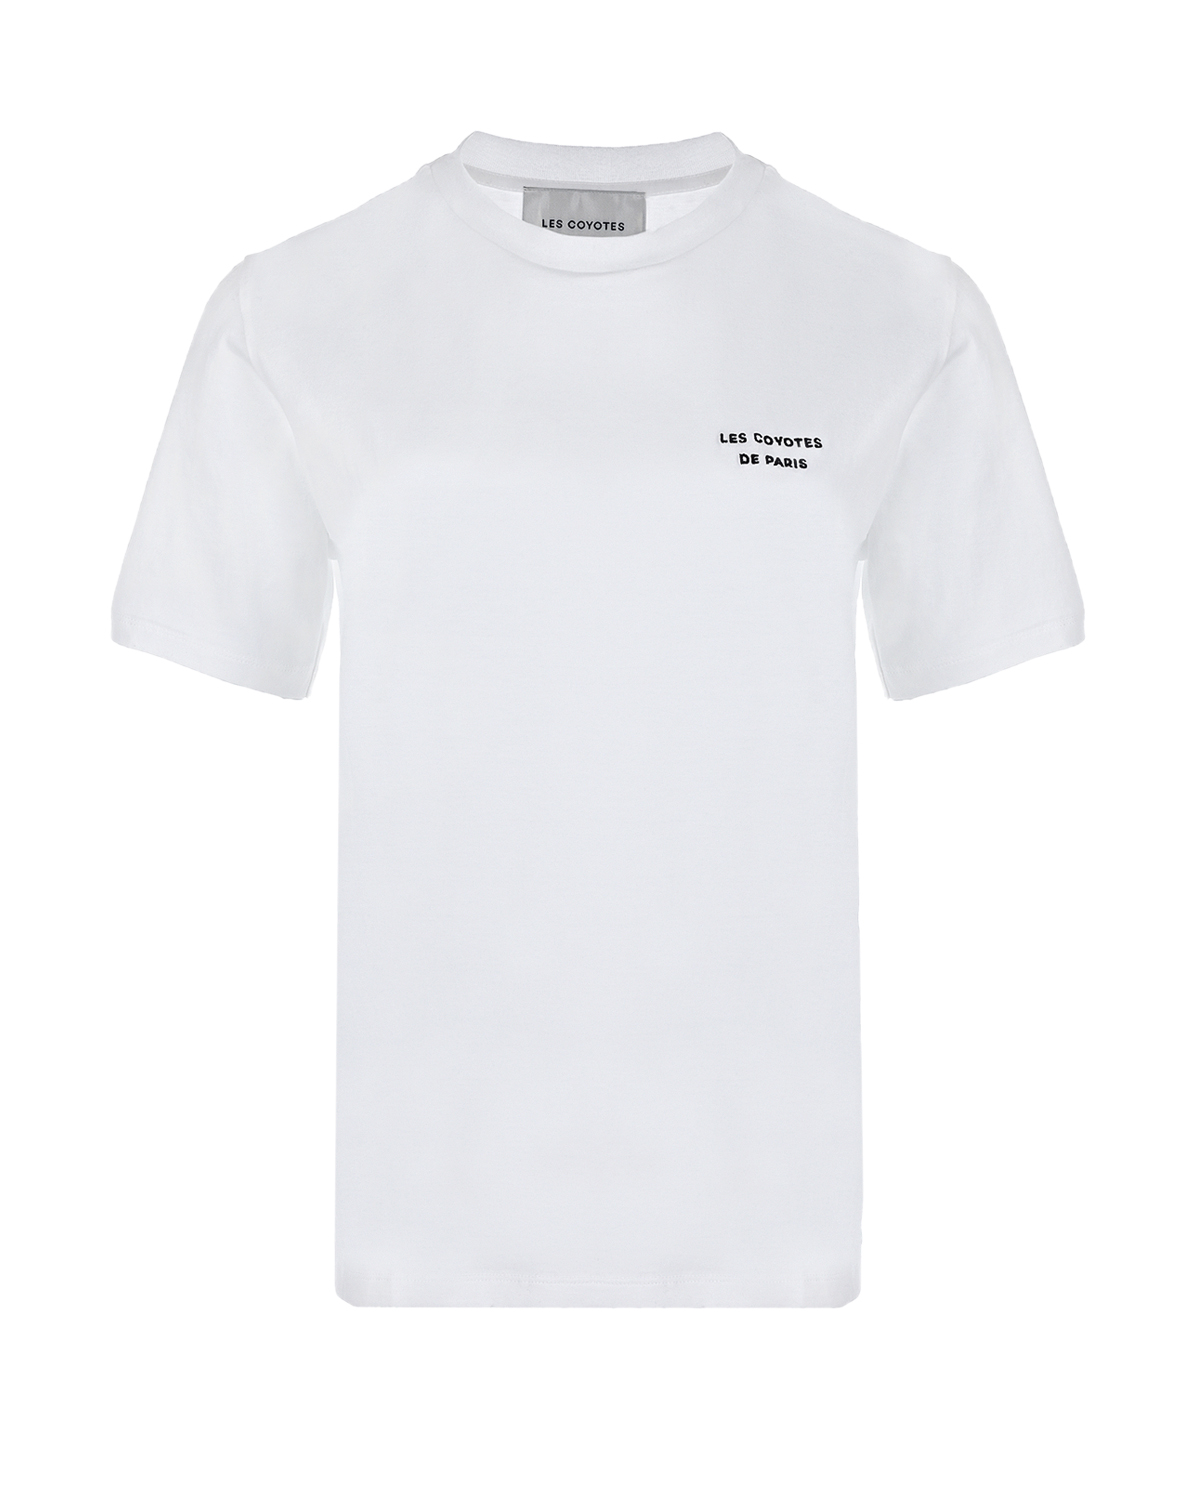 Белая футболка с логотипом Les Coyotes de Paris, размер 40, цвет белый - фото 1